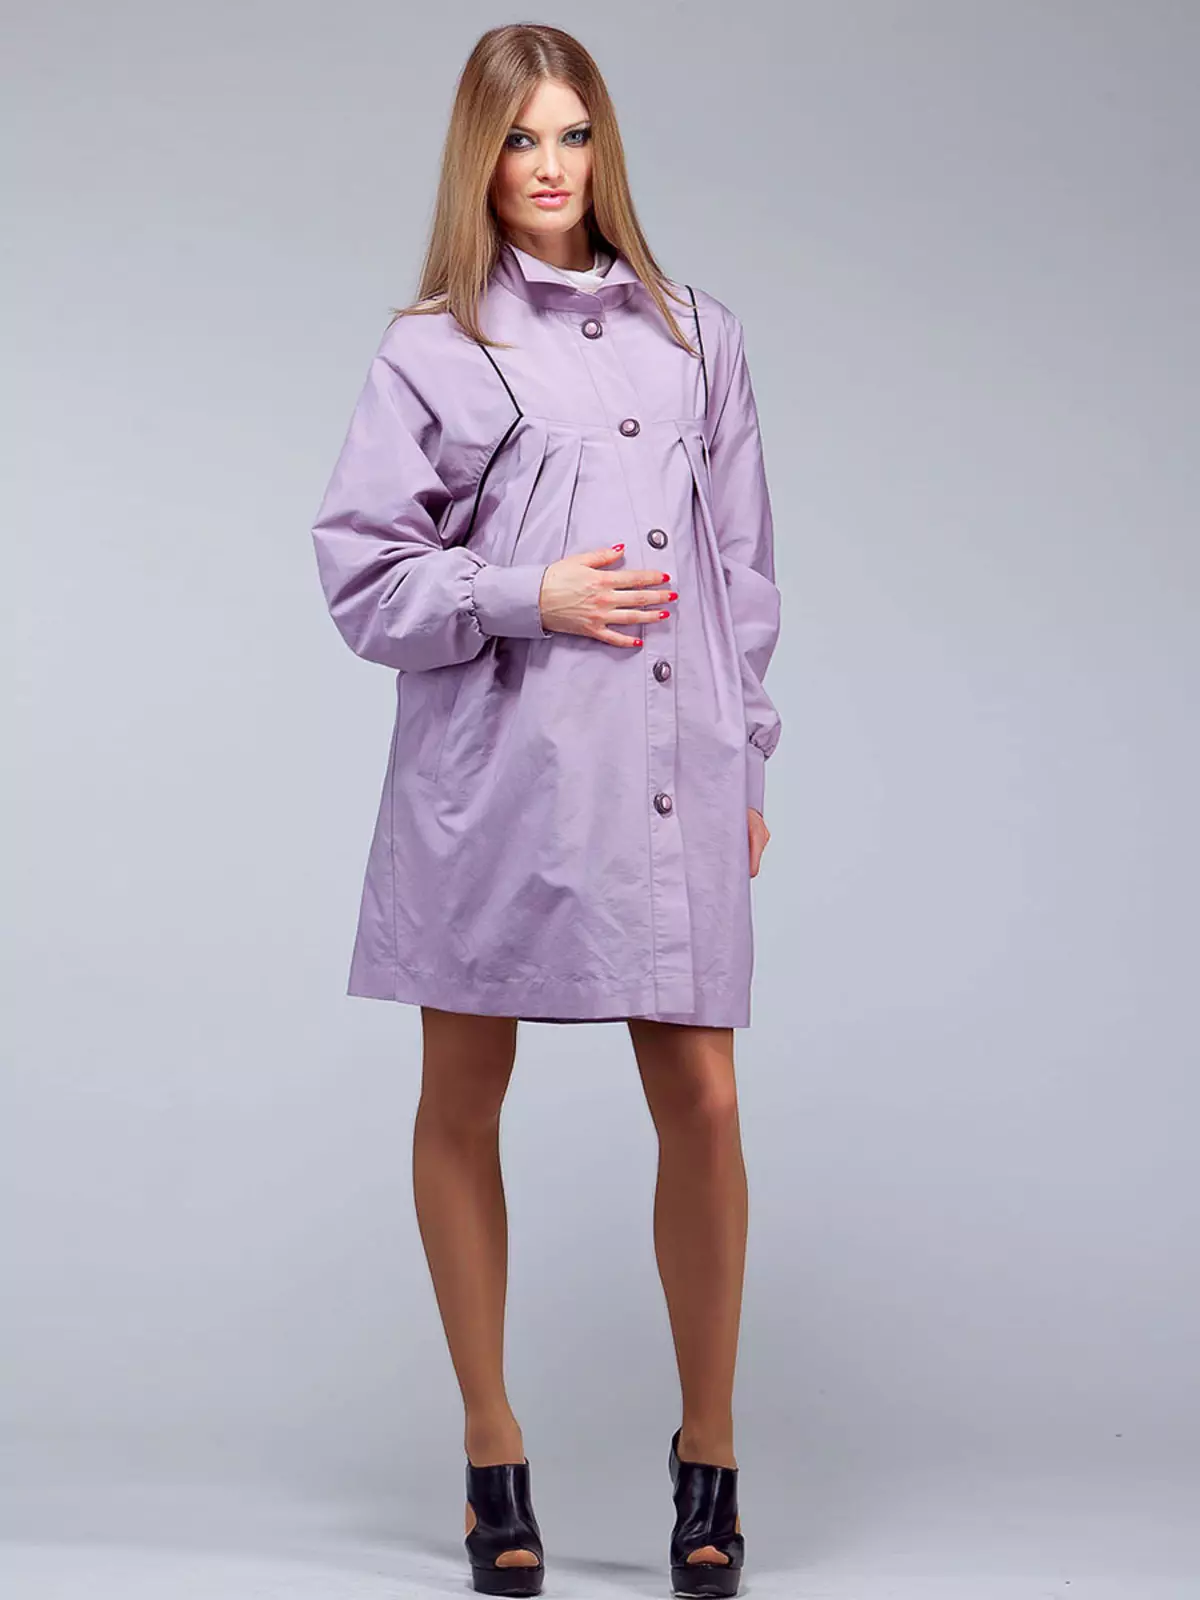 Mantel për gratë shtatzëna (40 foto): pallto dhe mantel dhe xhaketë mantel nga Adela, HM, modres dhe mama e ëmbël 359_35